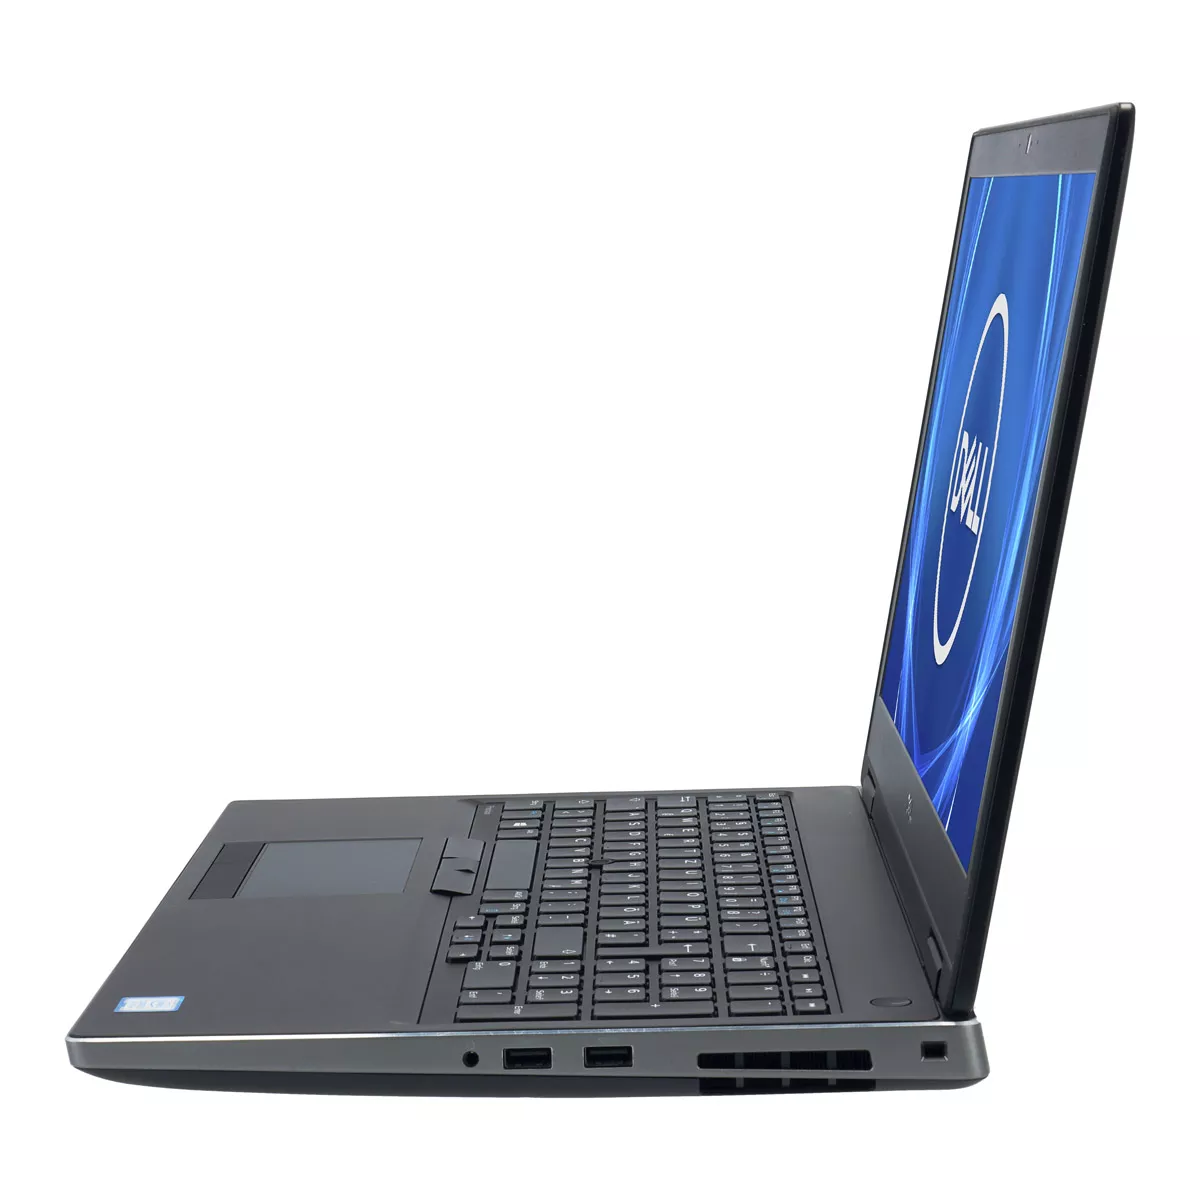 Dell Precision 7540 Core i7 9750H nVidia Quadro T1000M 16 GB 240 GB M.2 nVME SSD Webcam A+